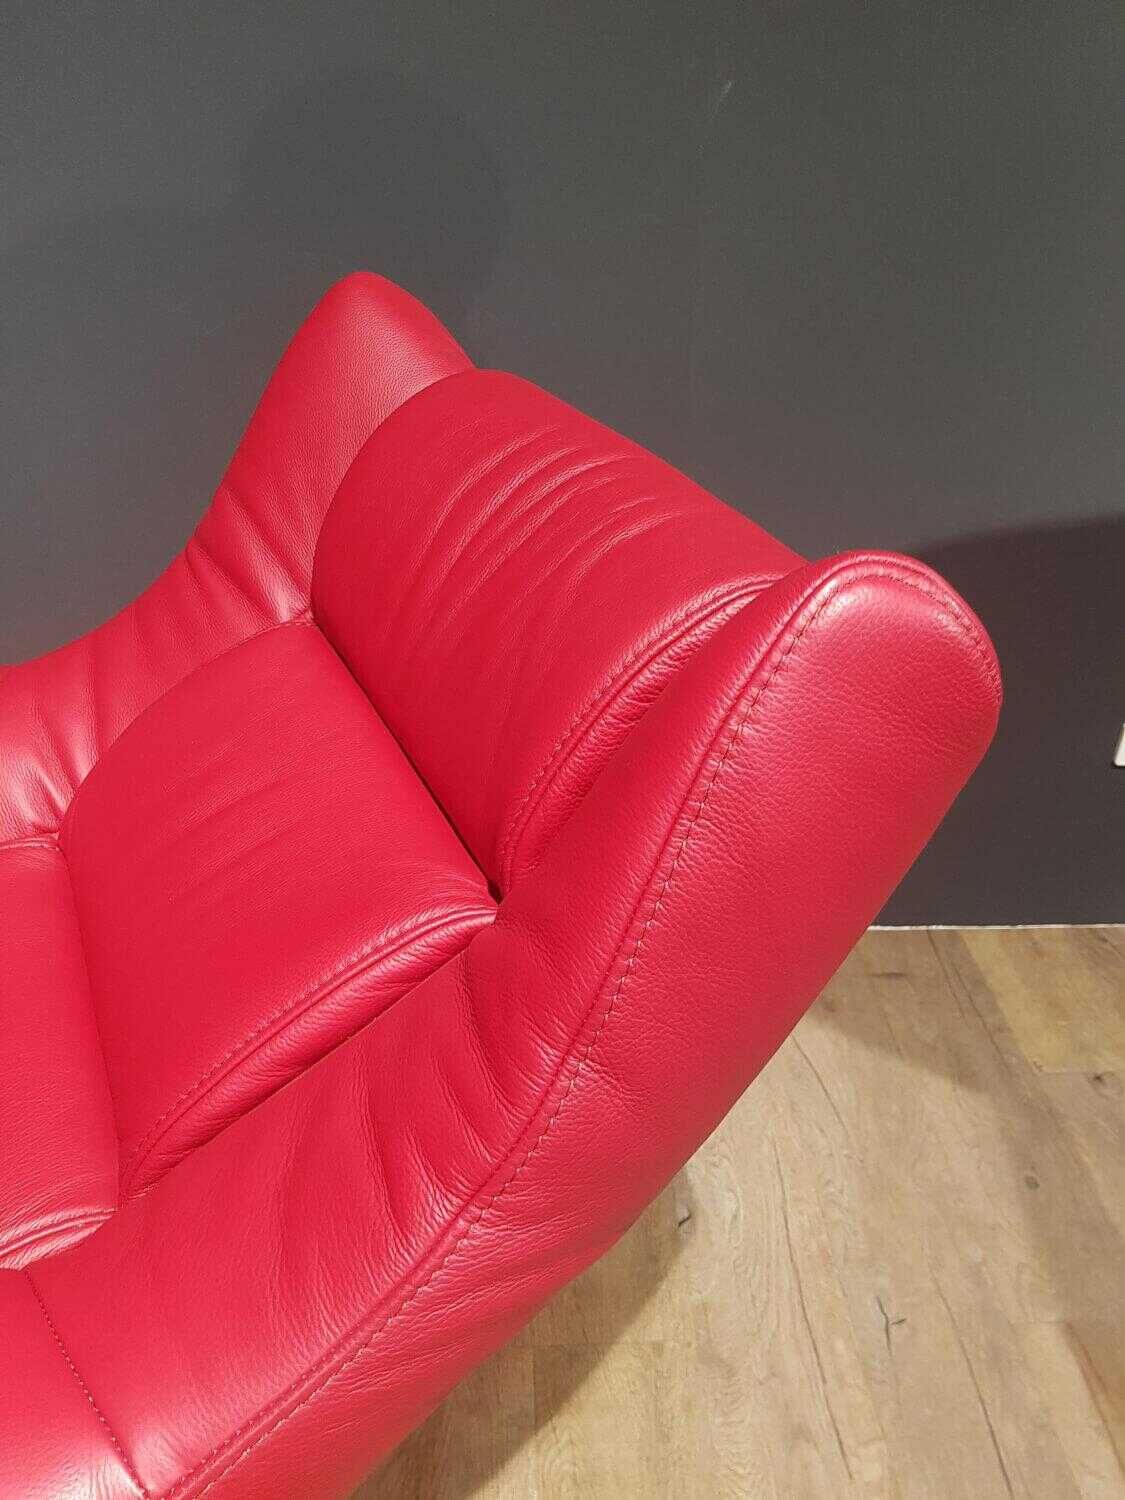 Sessel 7500 36N Leder Chiant Rot mit Relaxfunktion und Sitzhöhenverstellung